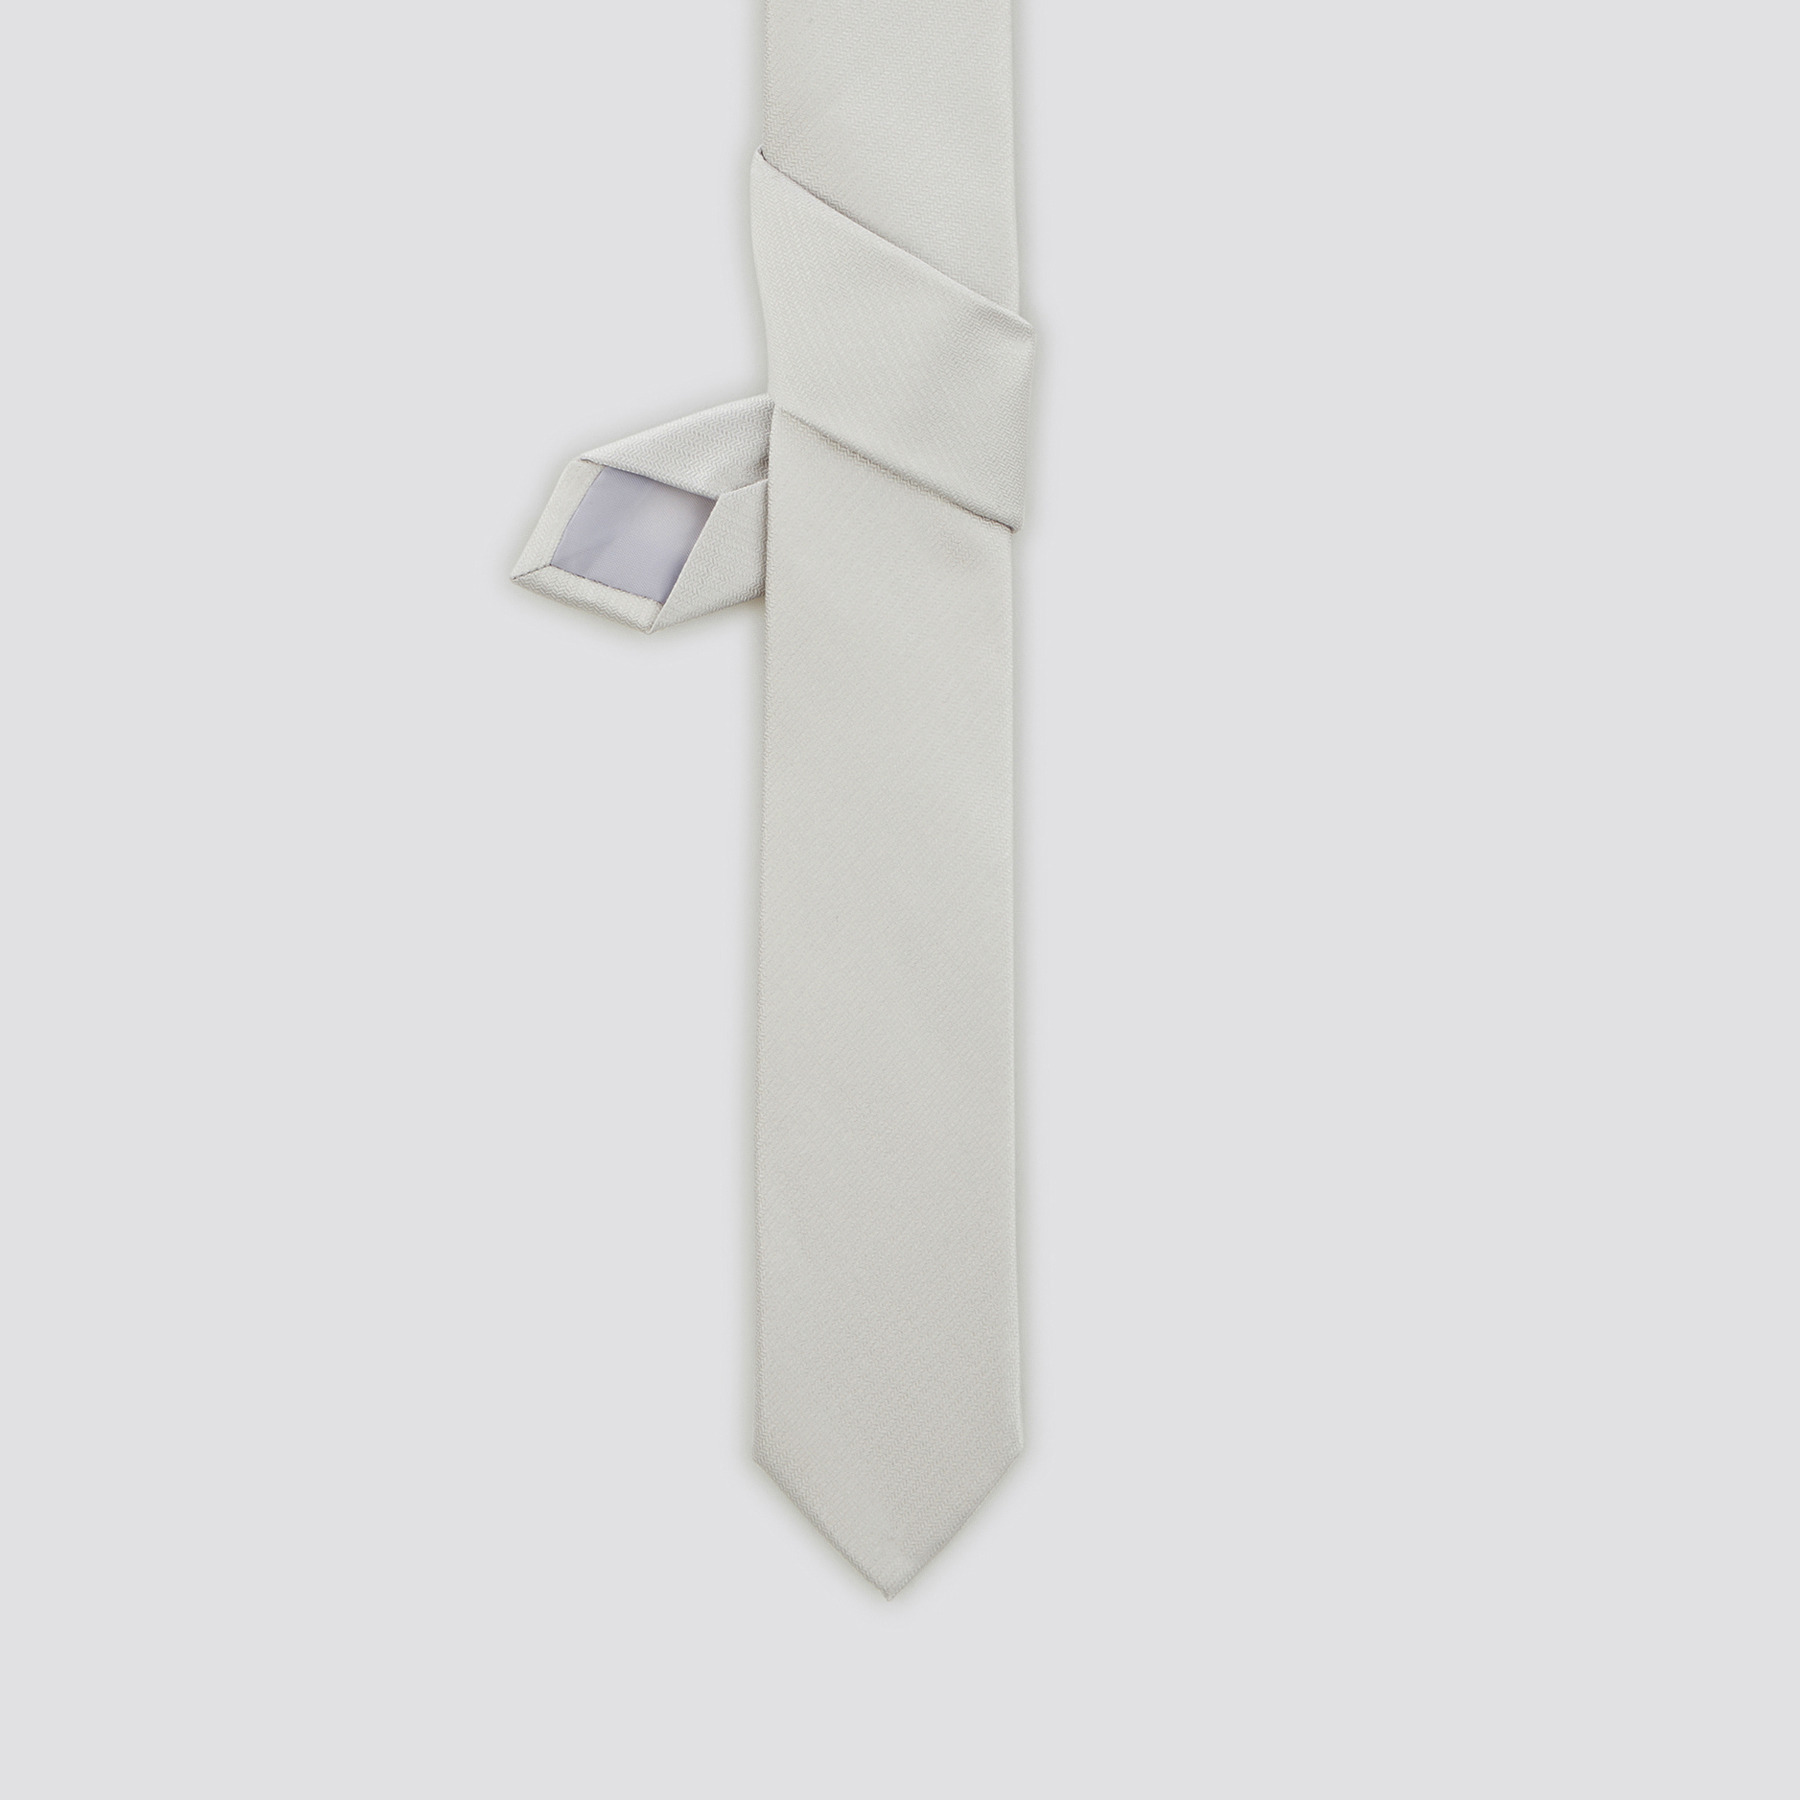 Cravate en soie Gris T.U. 100% Polyester, 100% Soie Homme